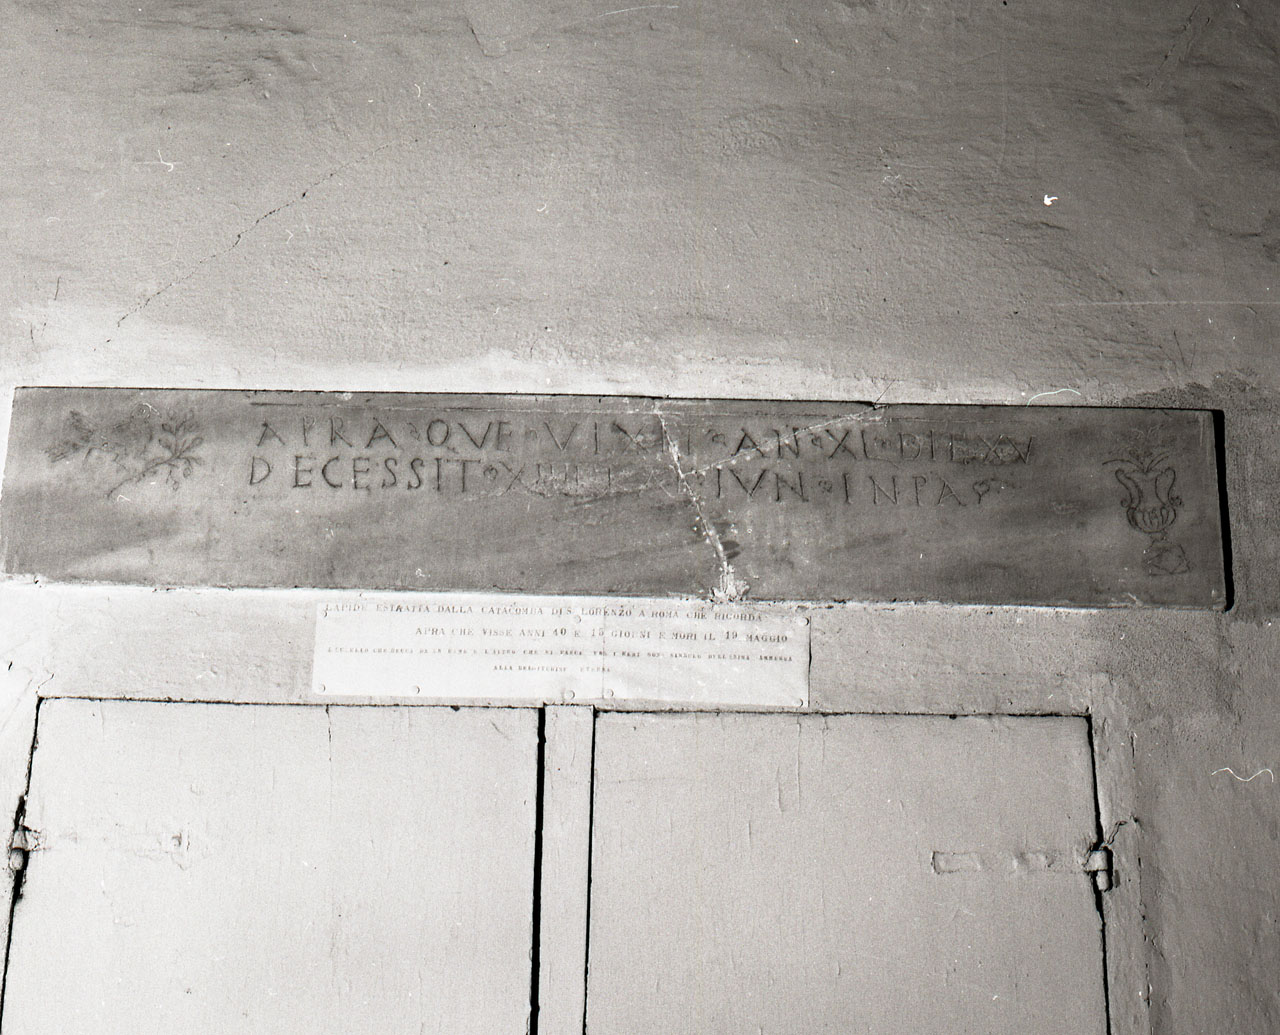 lapide tombale - bottega romana (secc. III/ IV)